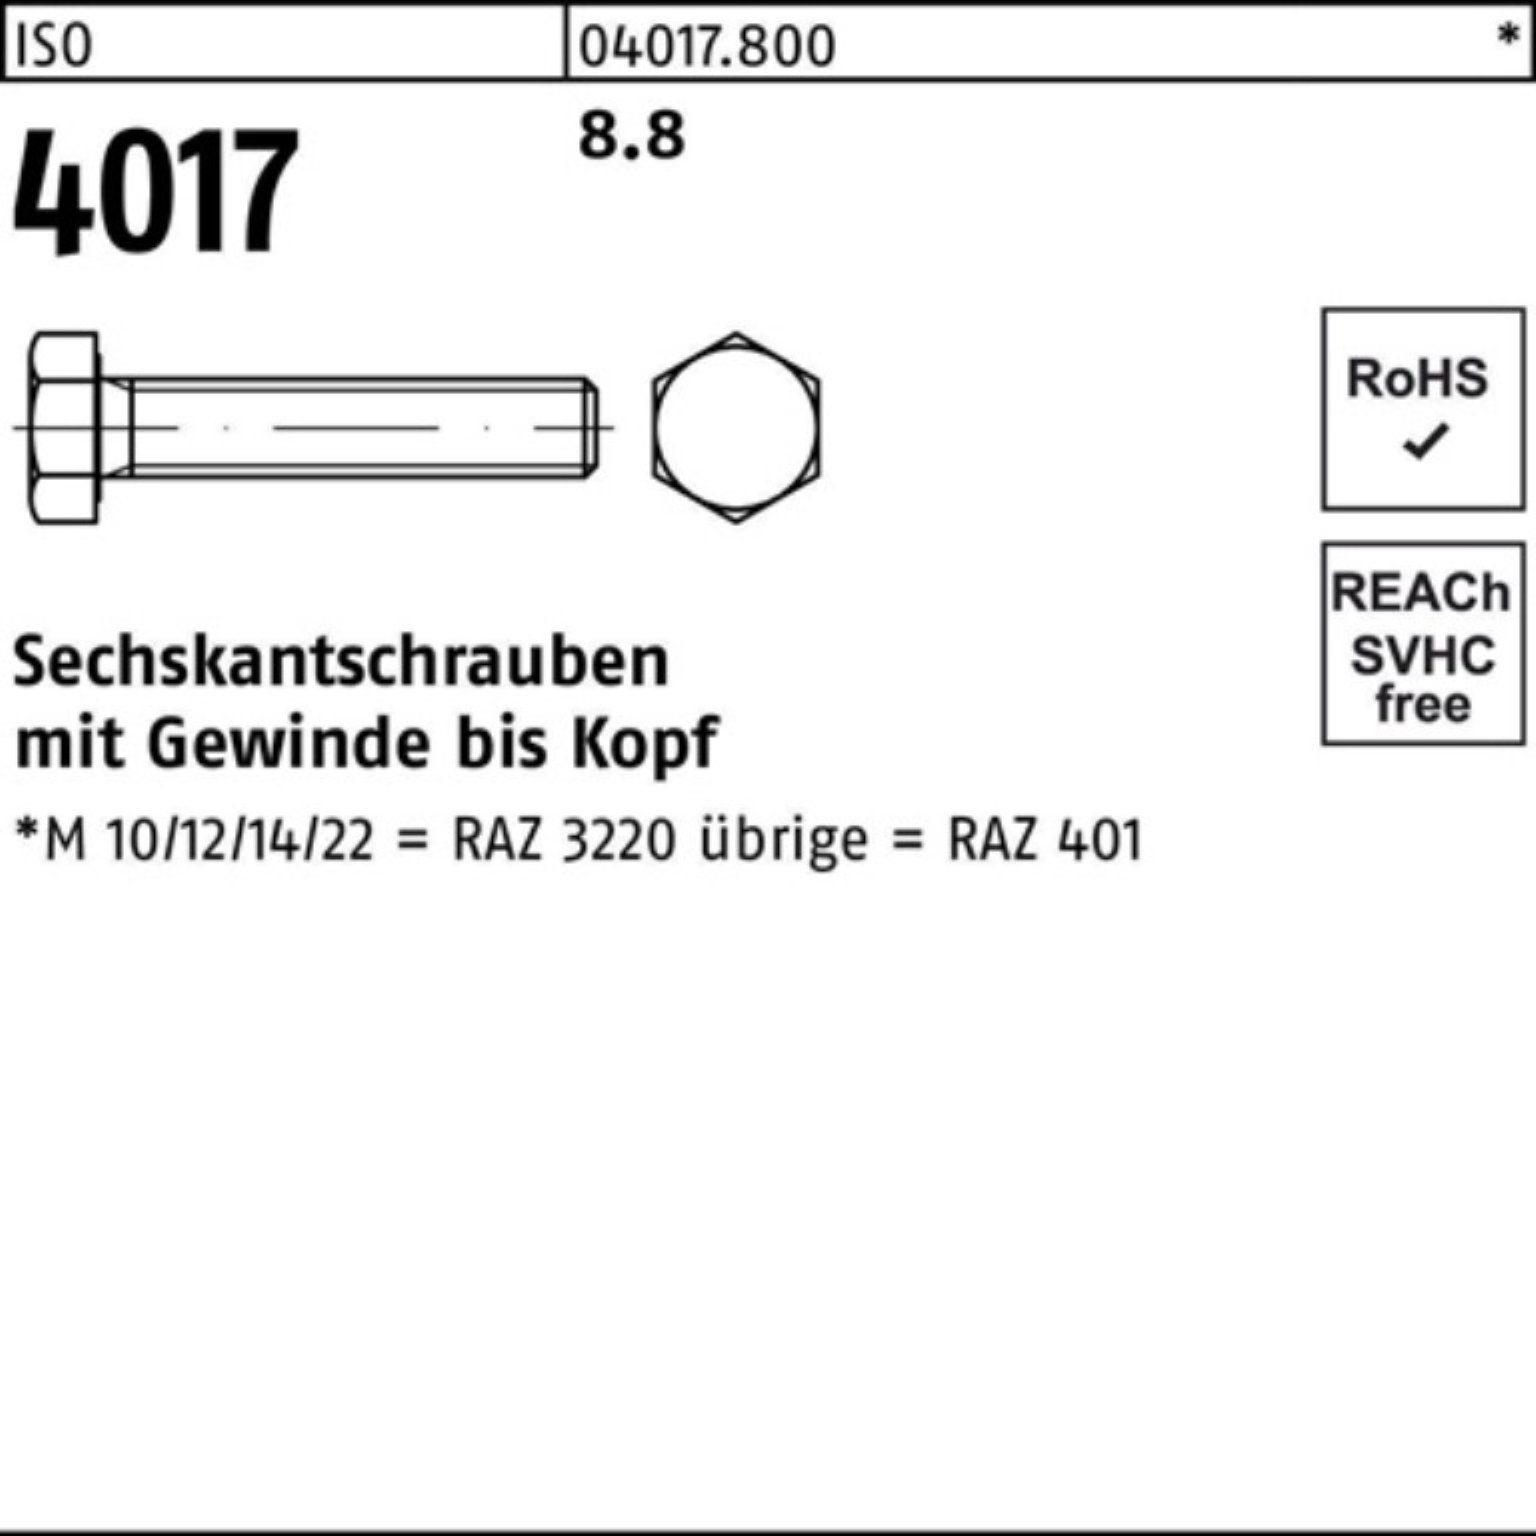 VG Sechskantschraube Bufab Stück ISO 4017 1 8.8 M33x 300 Pack Sechskantschraube 401 ISO 100er